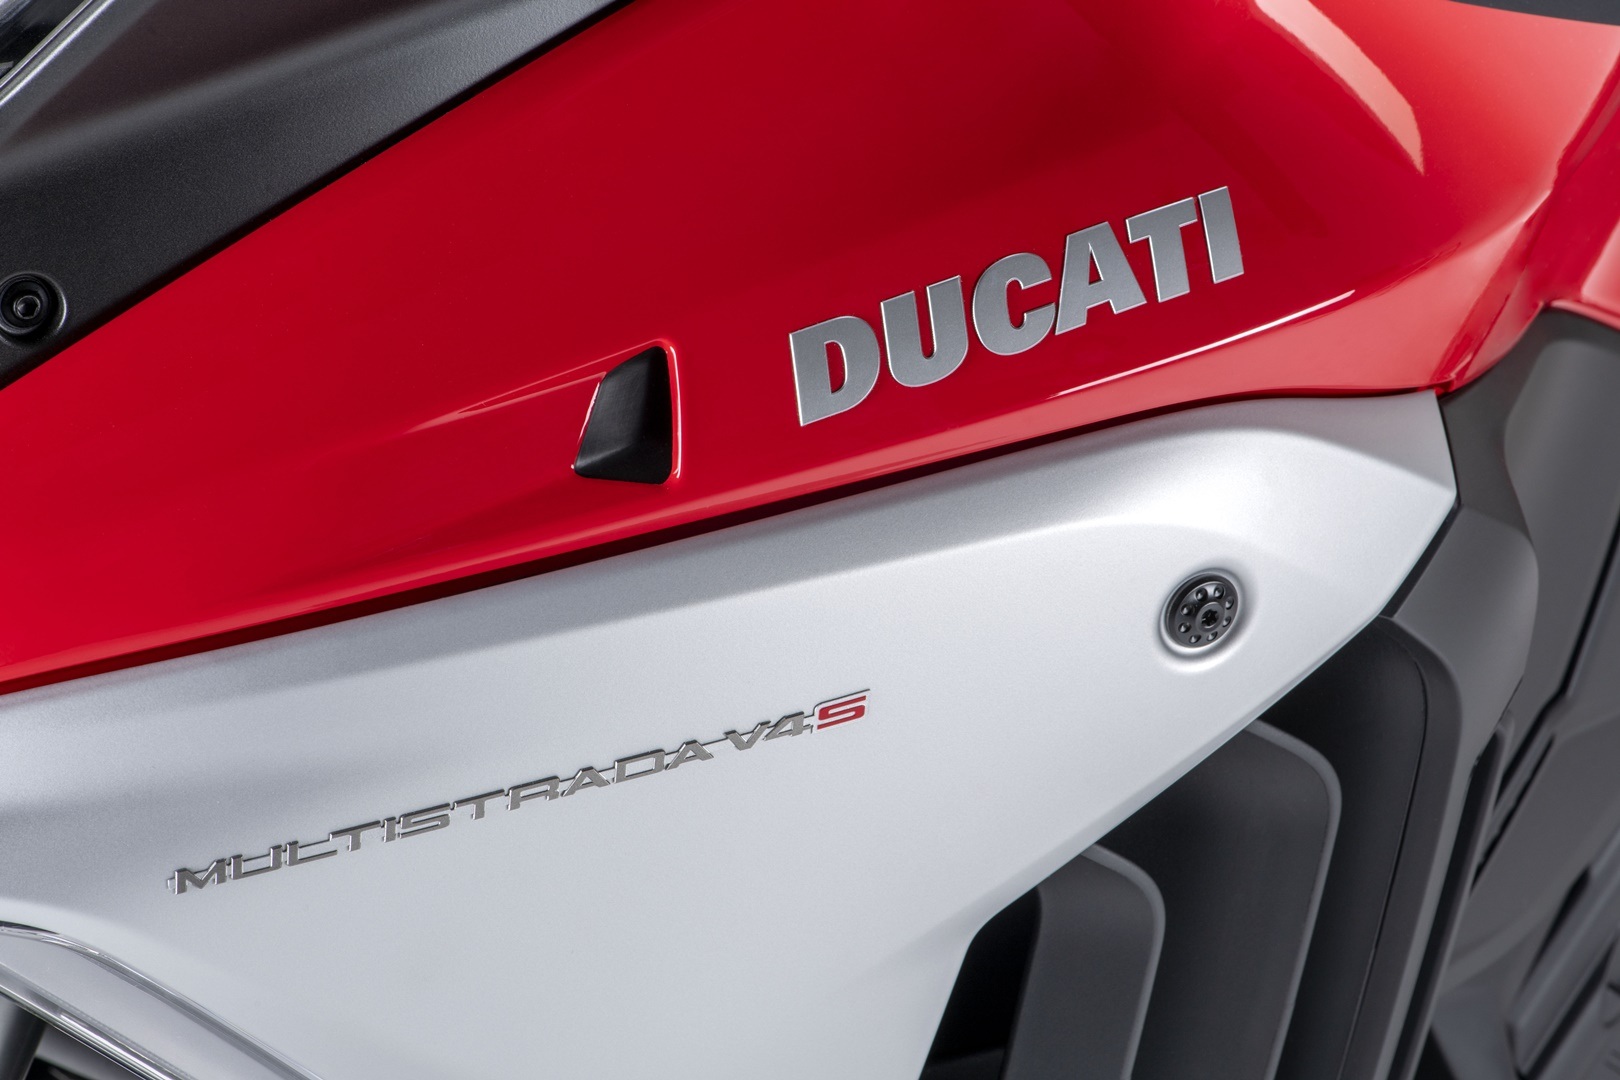 2021 ha sido un año dulce para Ducati